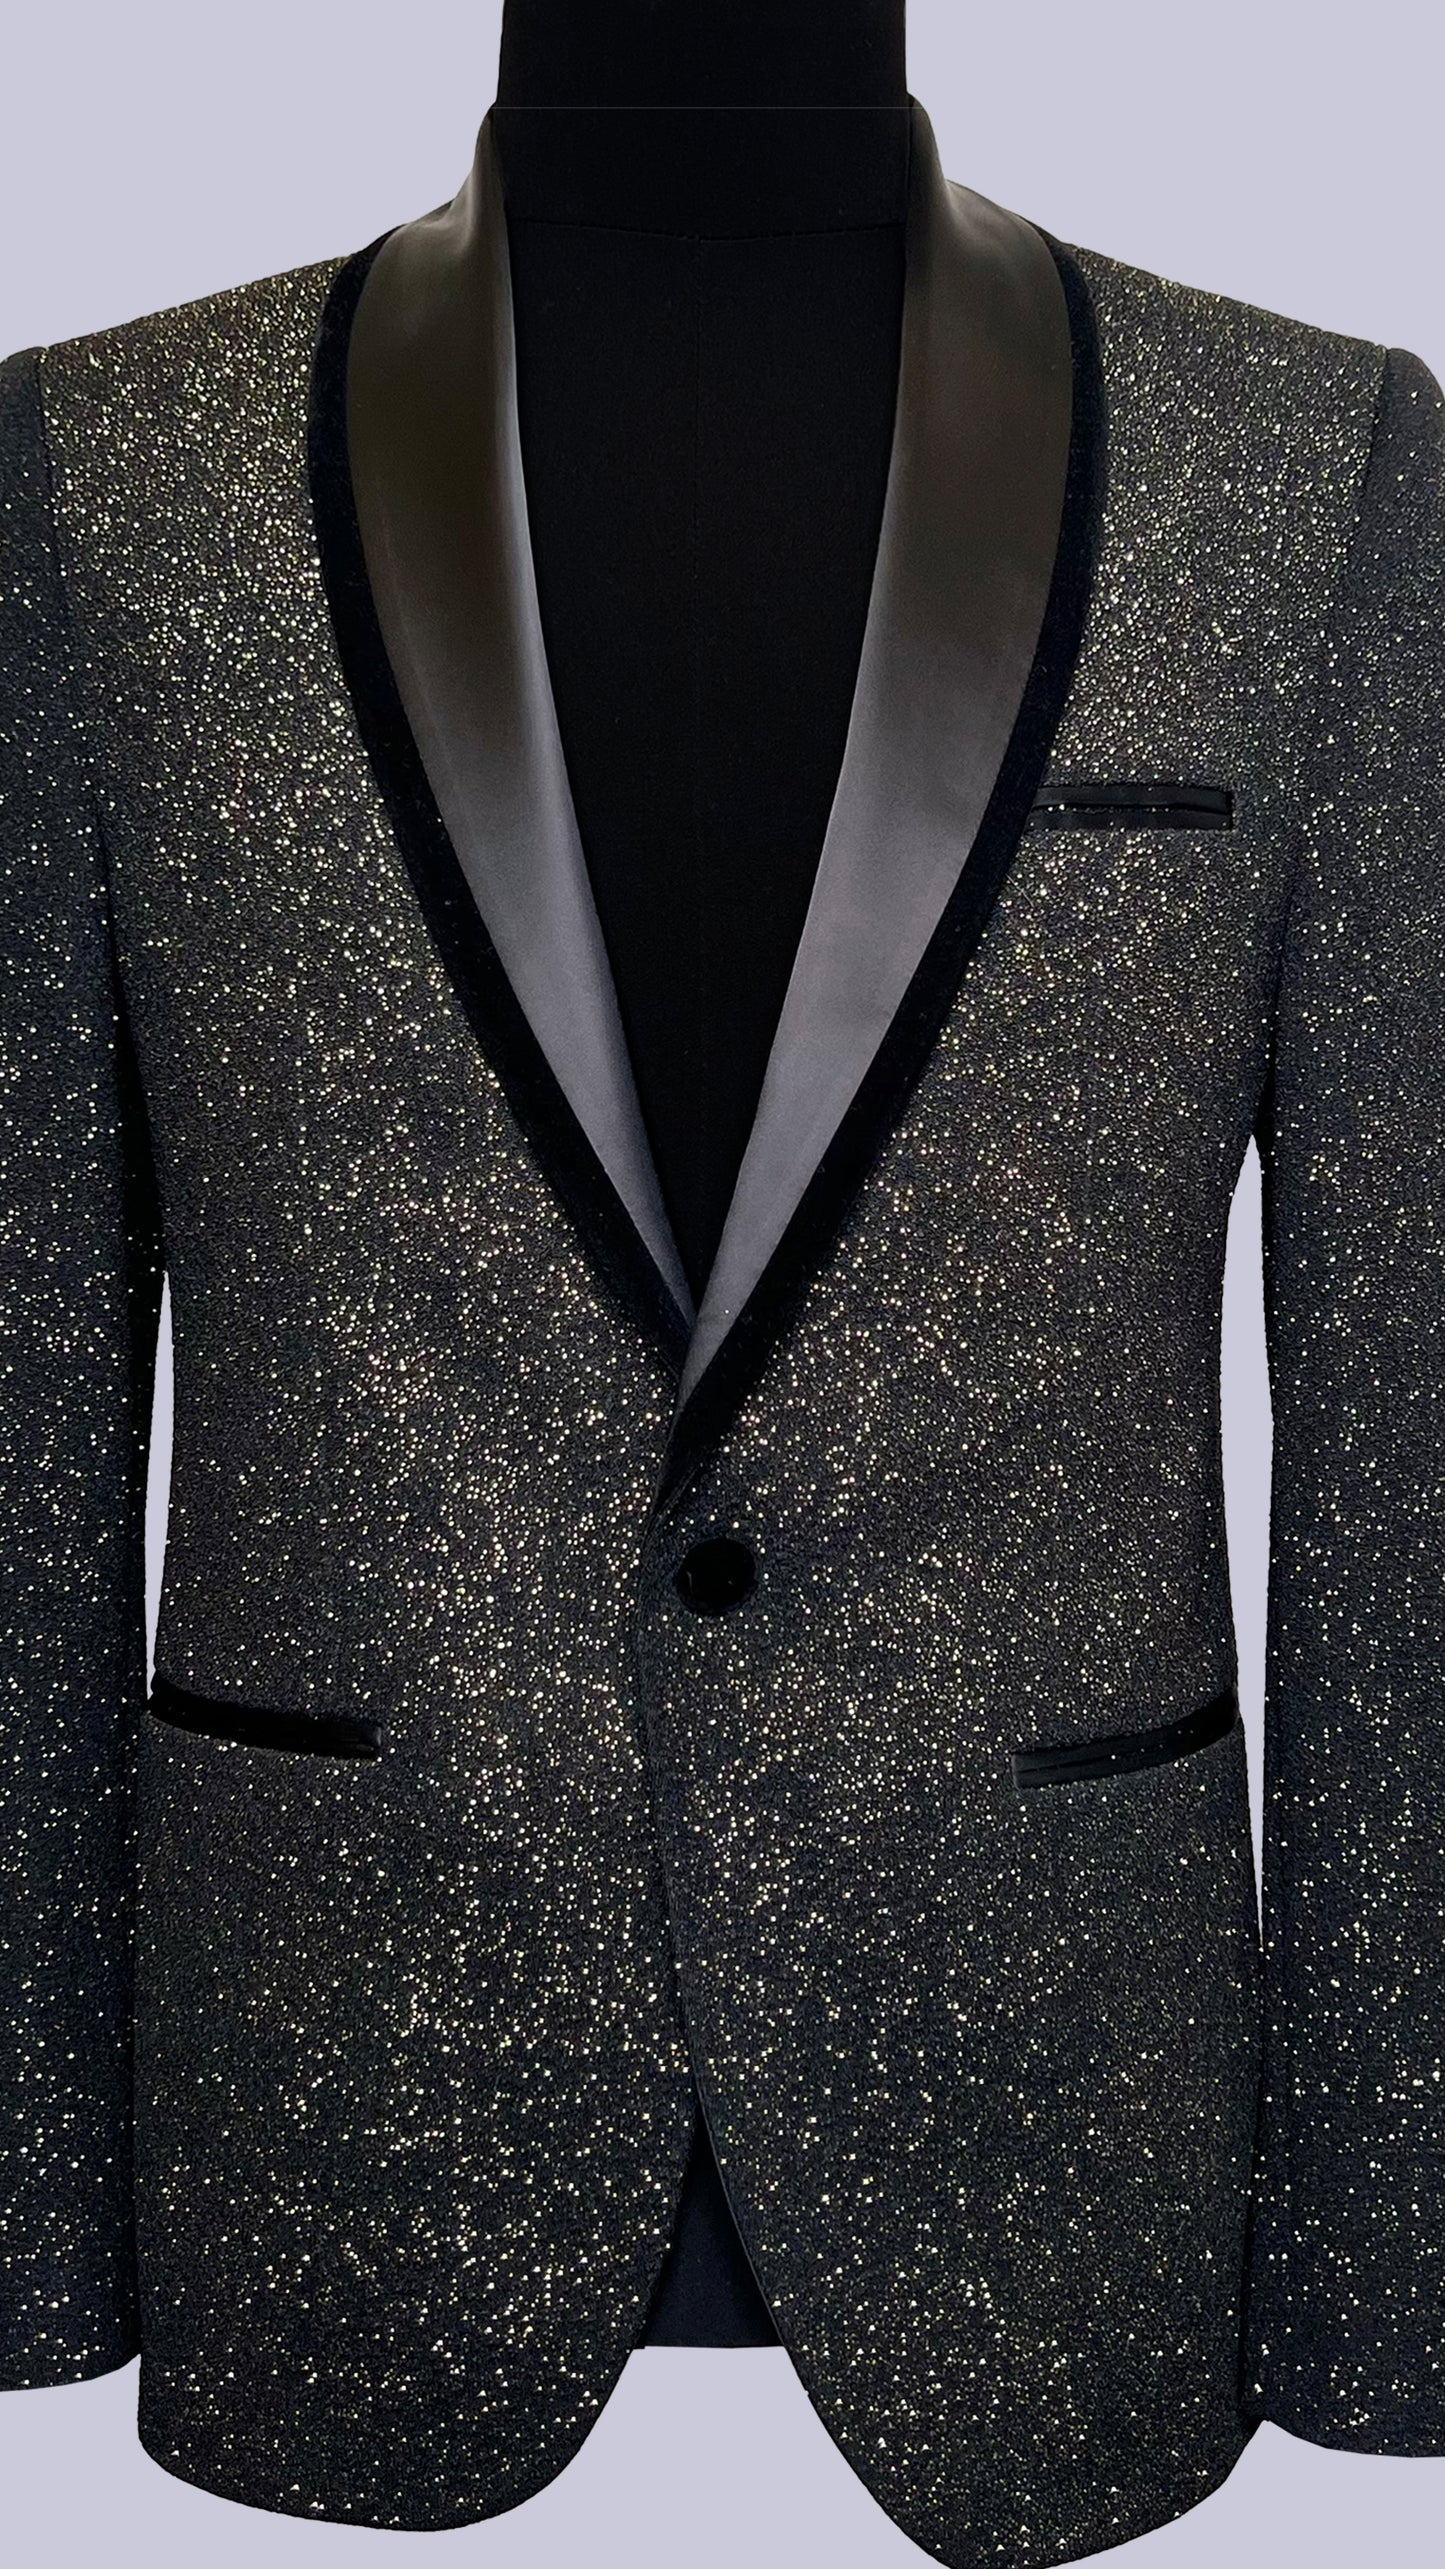 Men's Glittered Tuxedo Blazer by Vercini